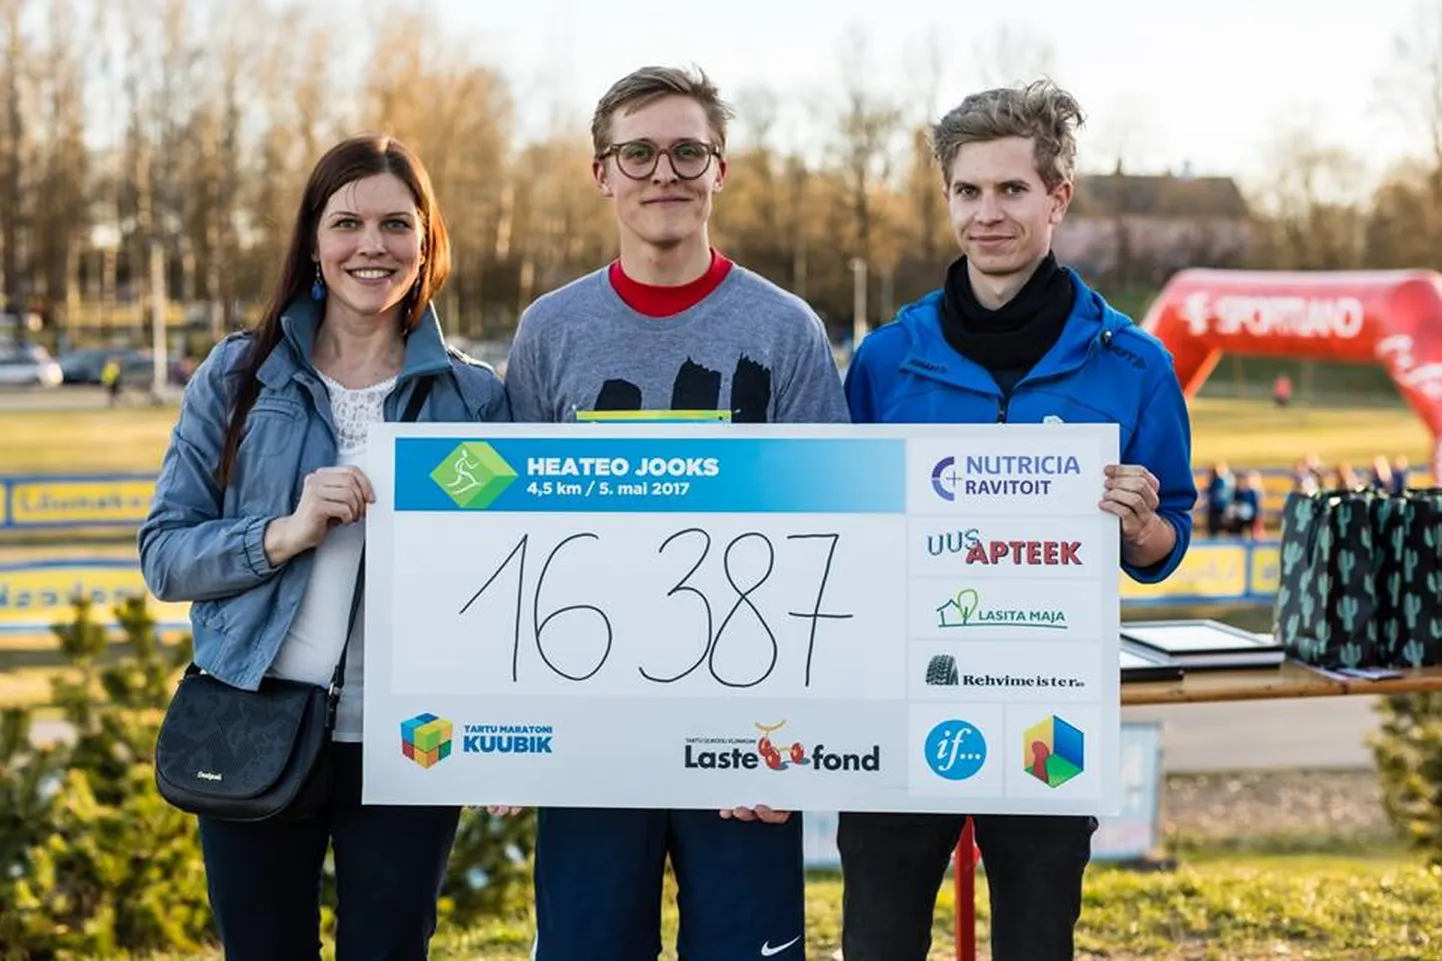 Möödunud aastal toetati Heateo jooksuga harvaesineva Micheli aplaasia haigusega Mihhaili, kellele koguti 2420 osaleja abiga kokku 16 387 eurot.